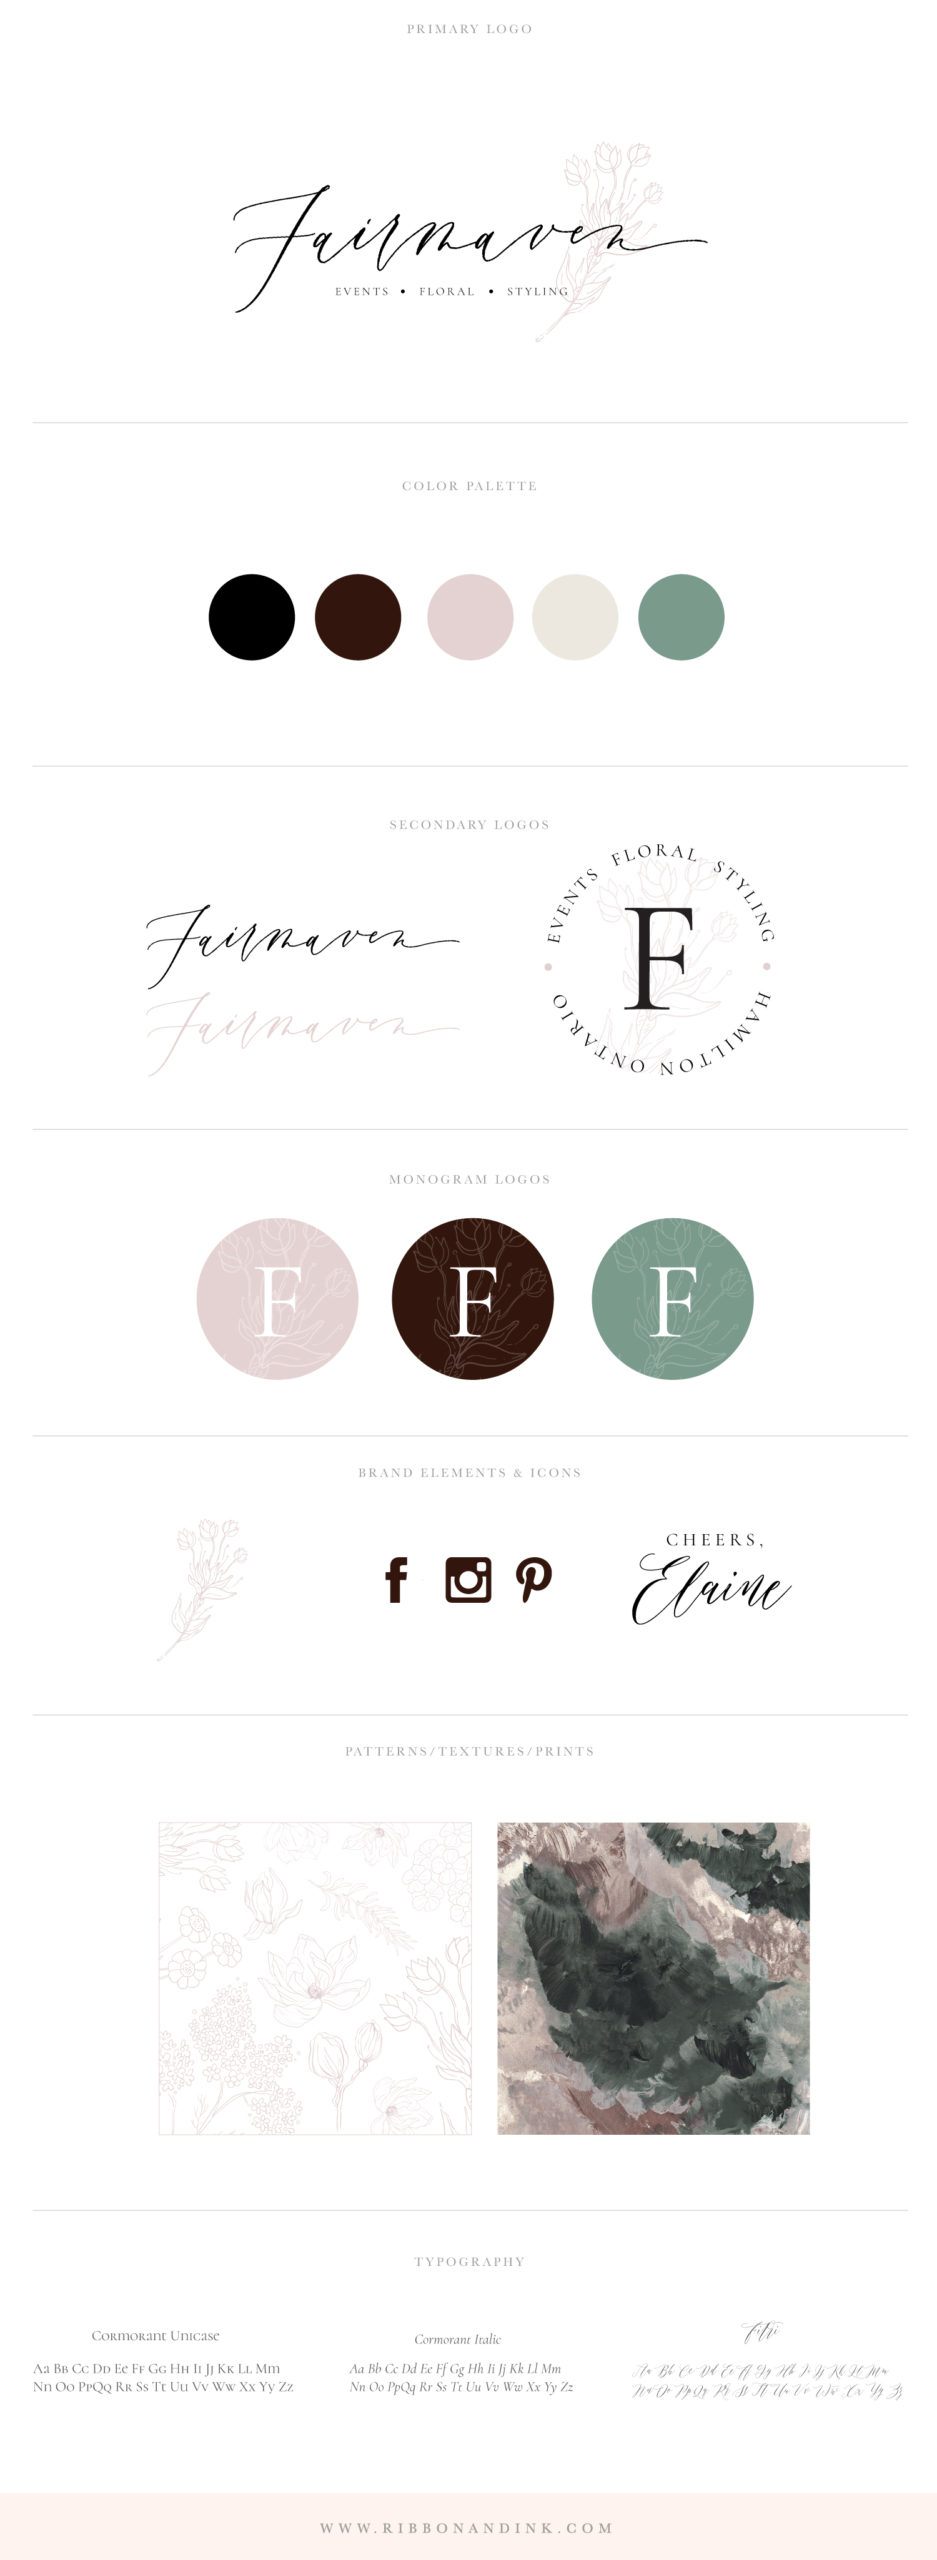 brand identity / branding board / wedding florist logo / bold color palette / logo designer for women / branding for wedding businesses / plum / mauve / green